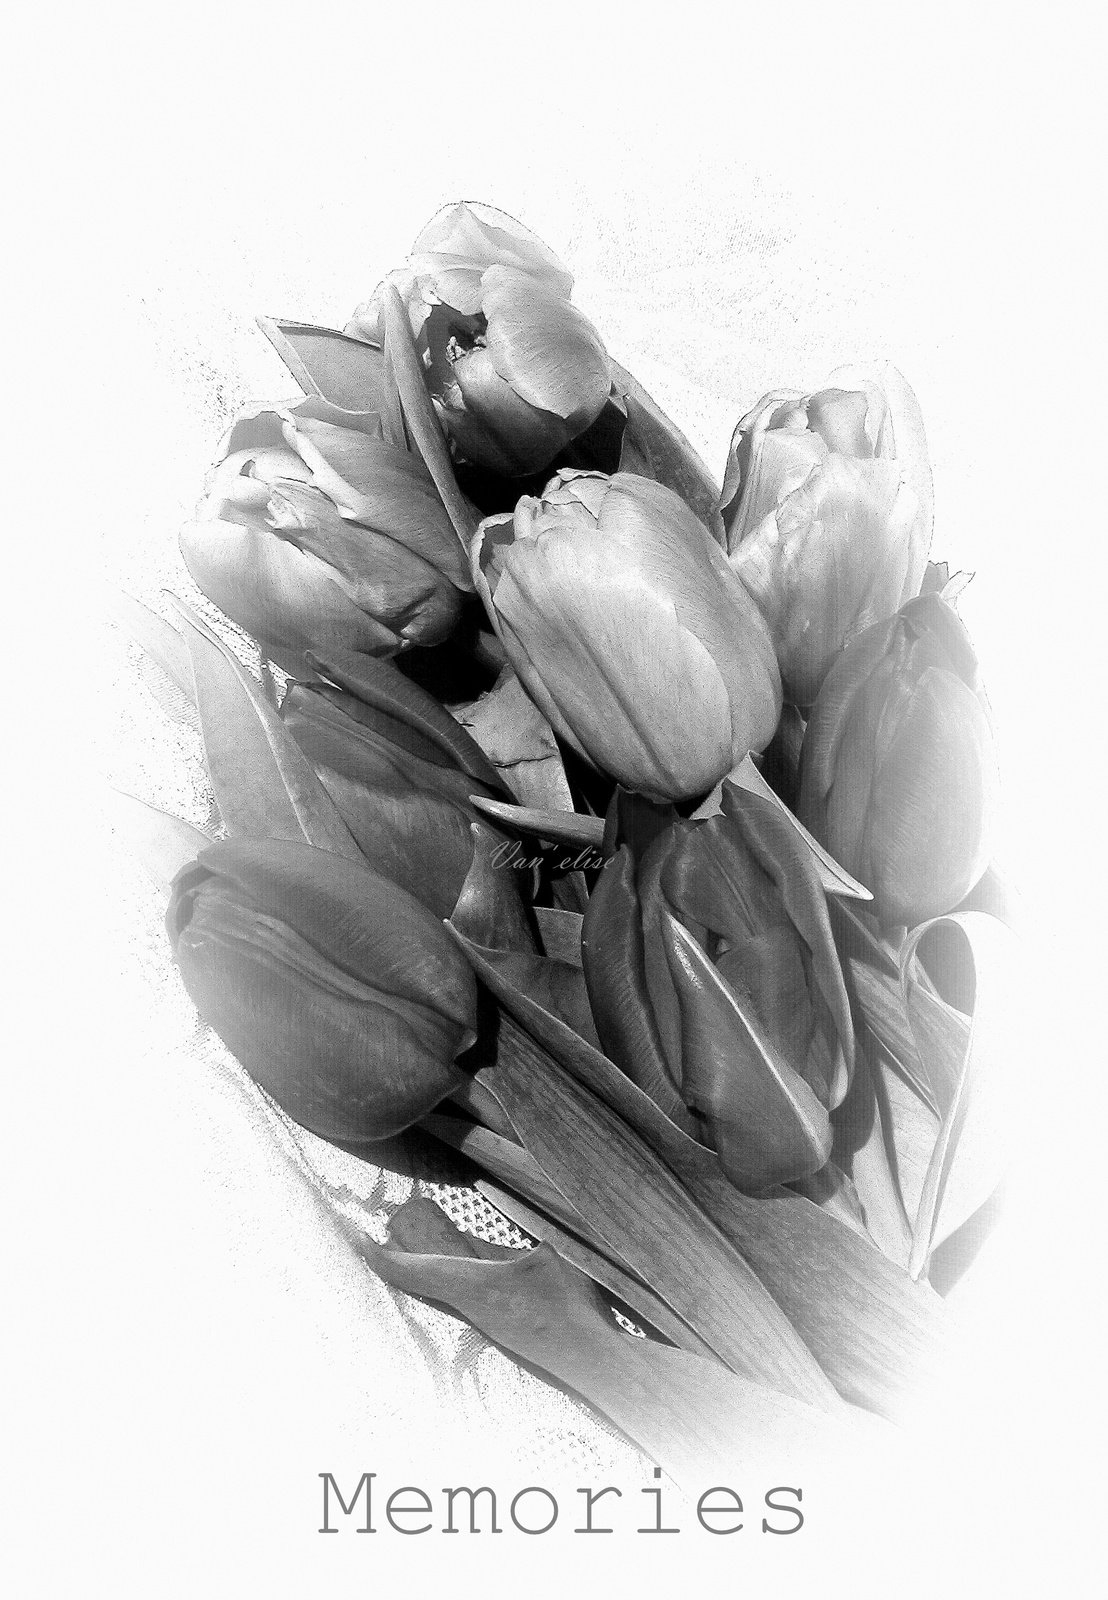 Emlékezés tulipánok - fekete fehér fotó